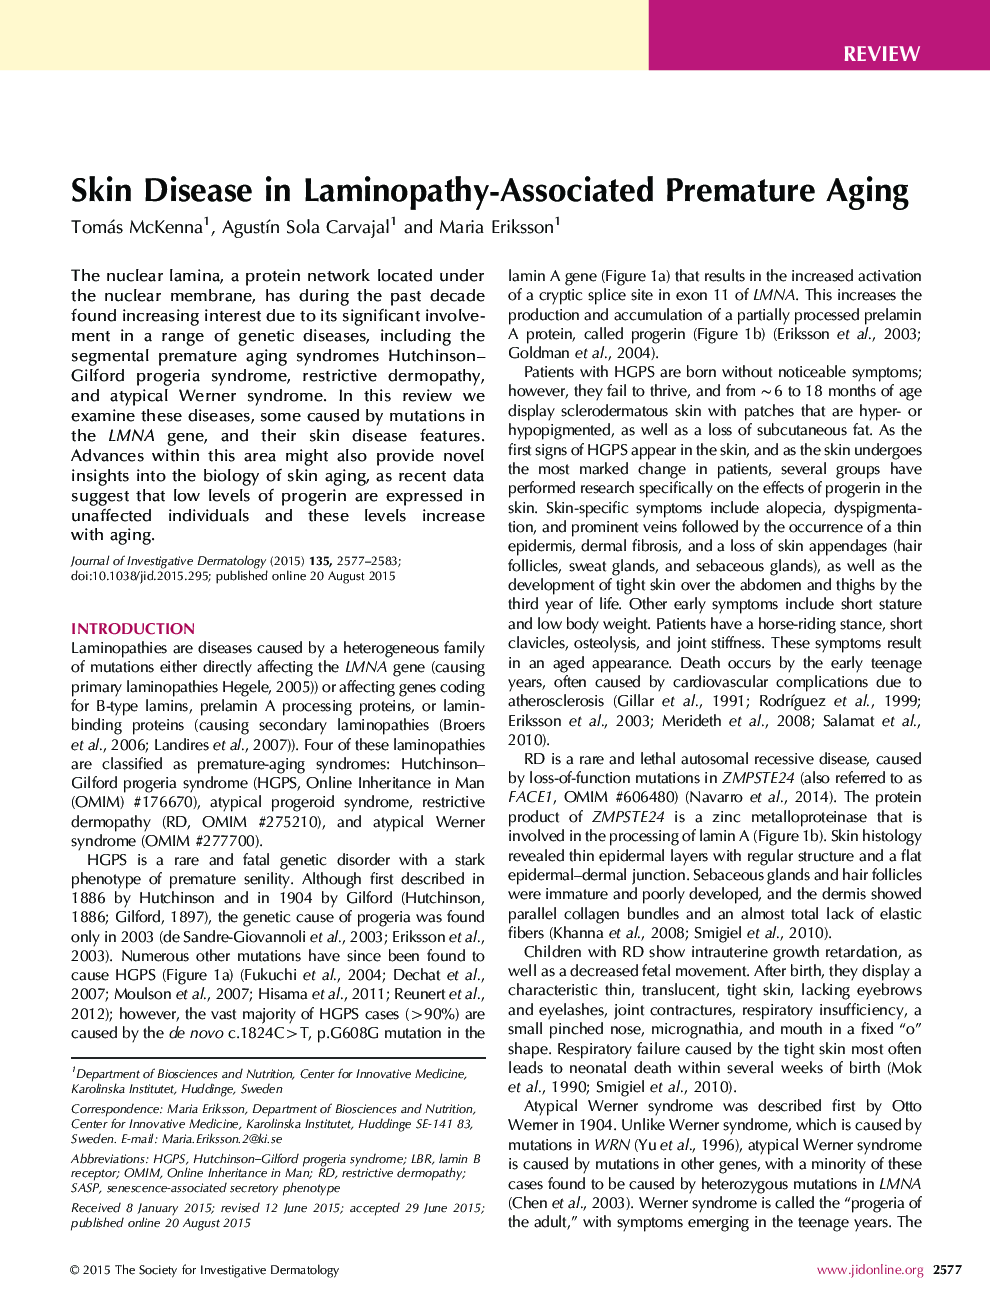 Review ArticleSkin Disease in Laminopathy-Associated Premature Aging